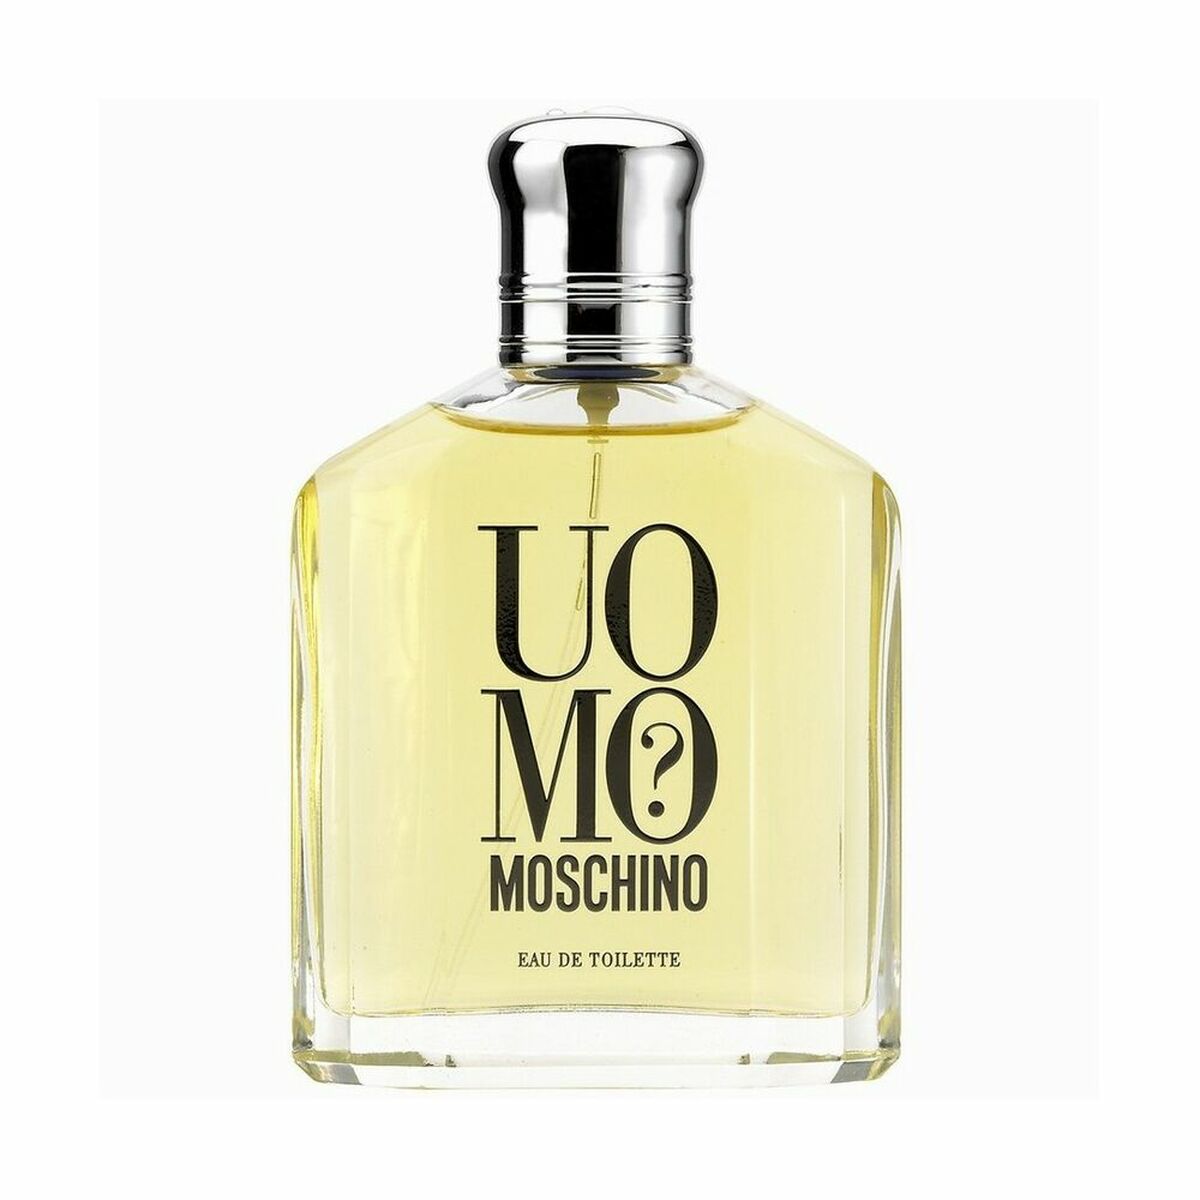 Parfum Homme Moschino EDT Uomo? (125 ml)